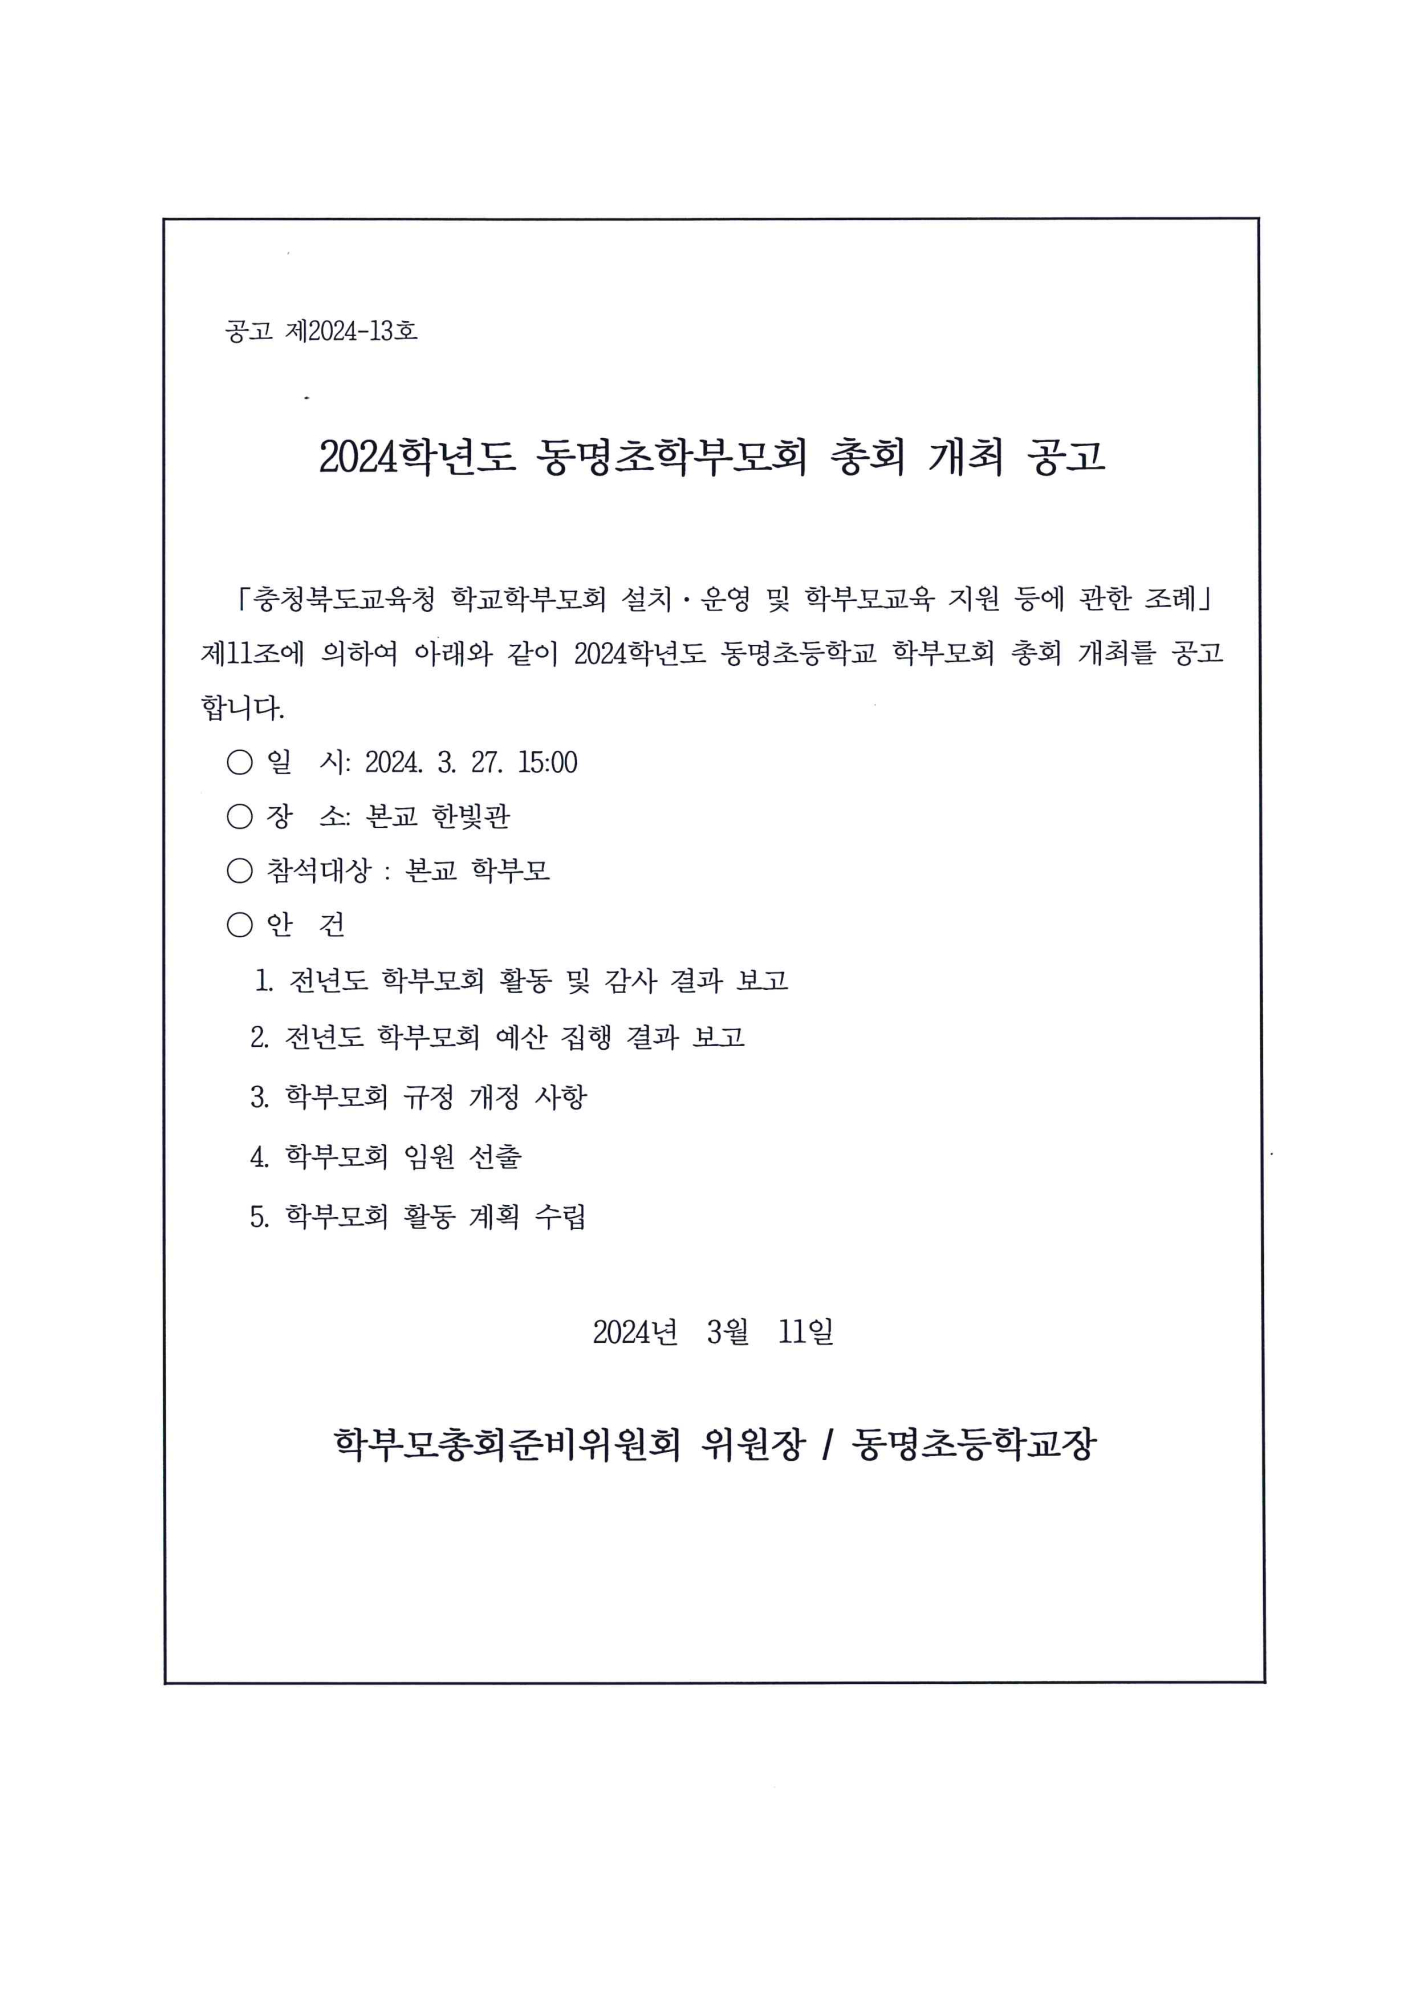 2024. 학부모회 총회 개최 공고문